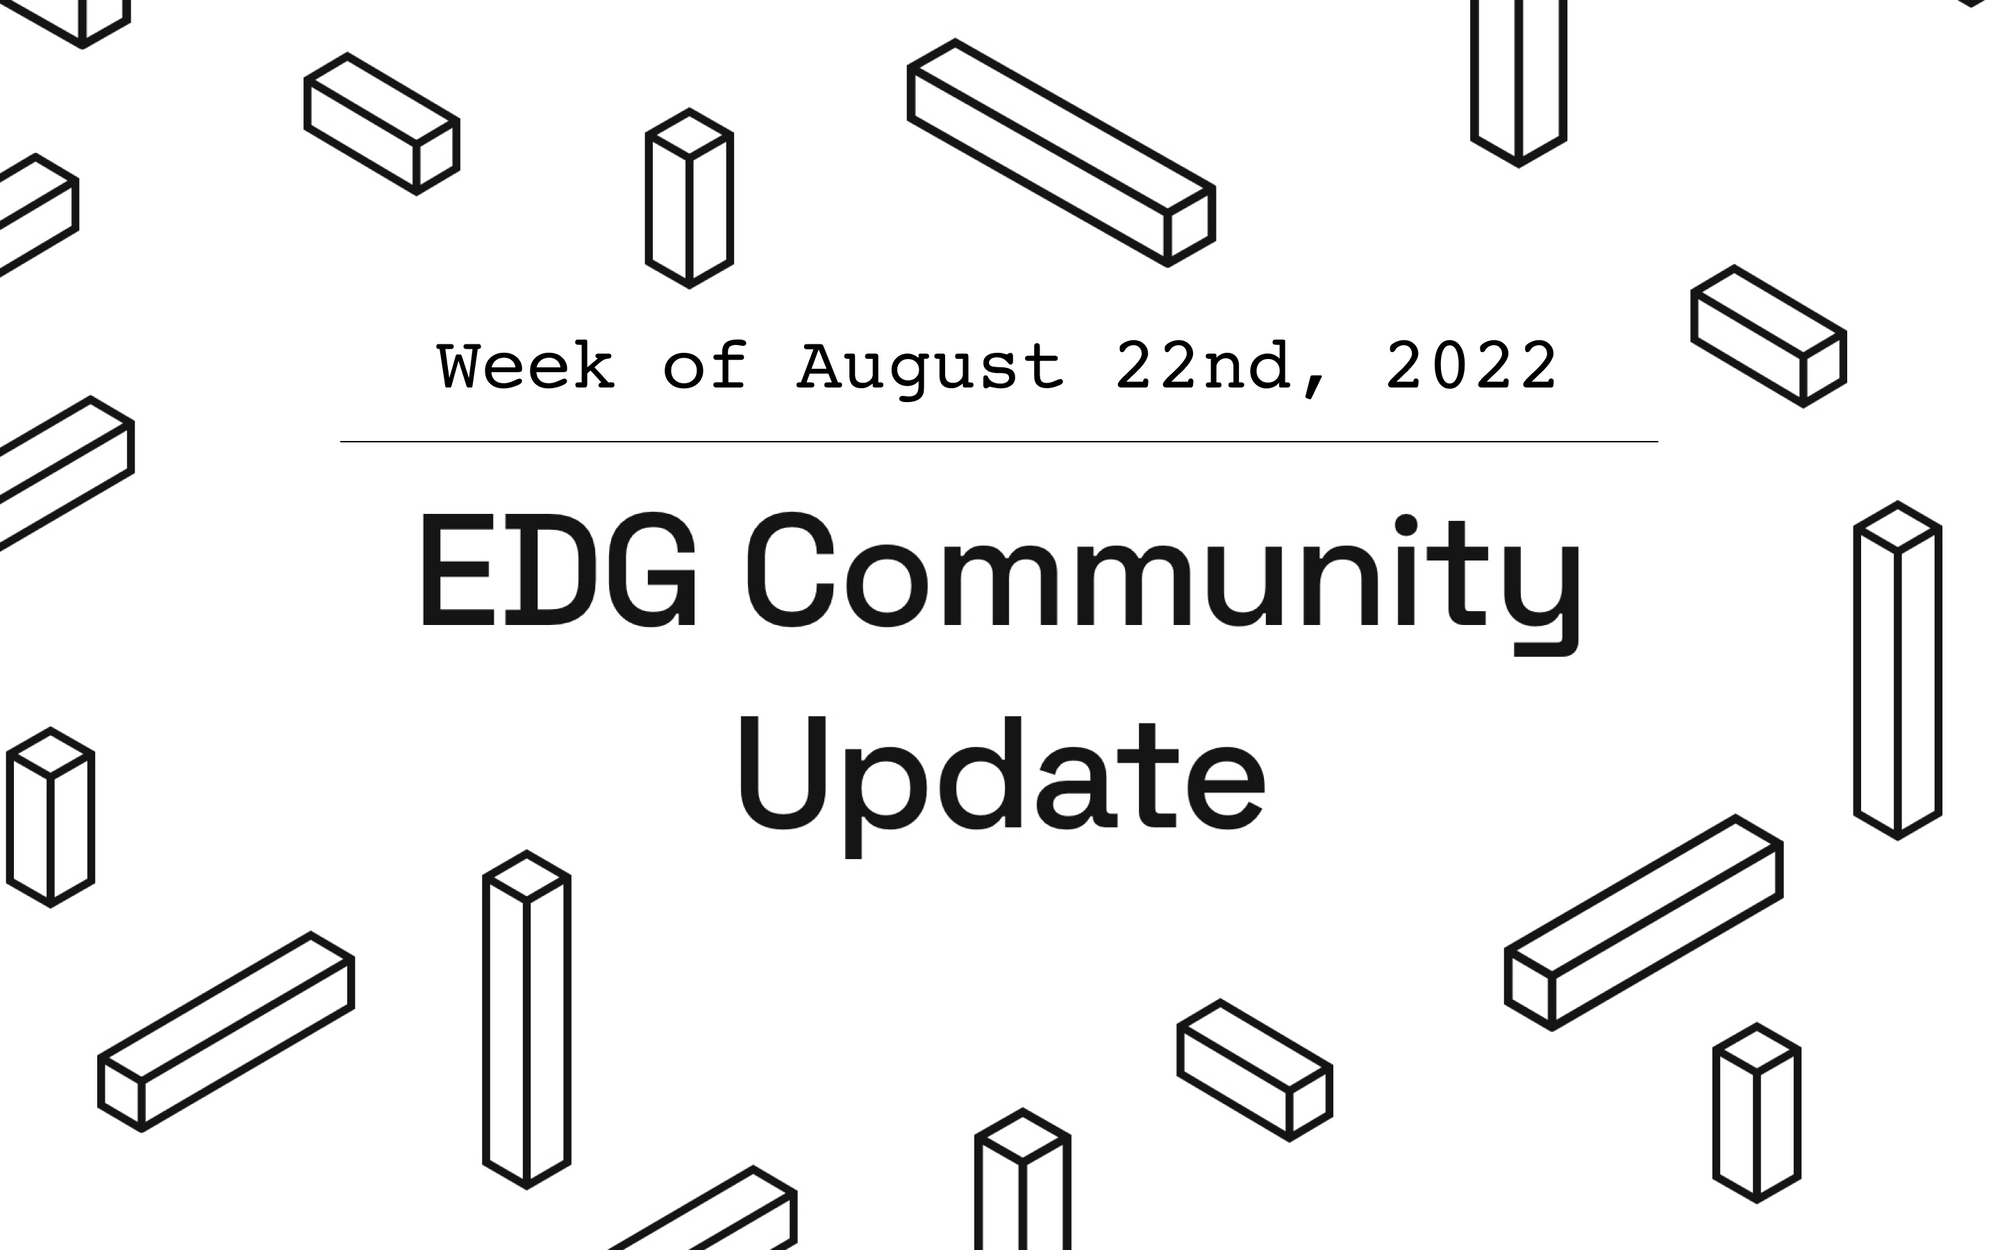 EDG Community Update: Week of August 22nd, 2022